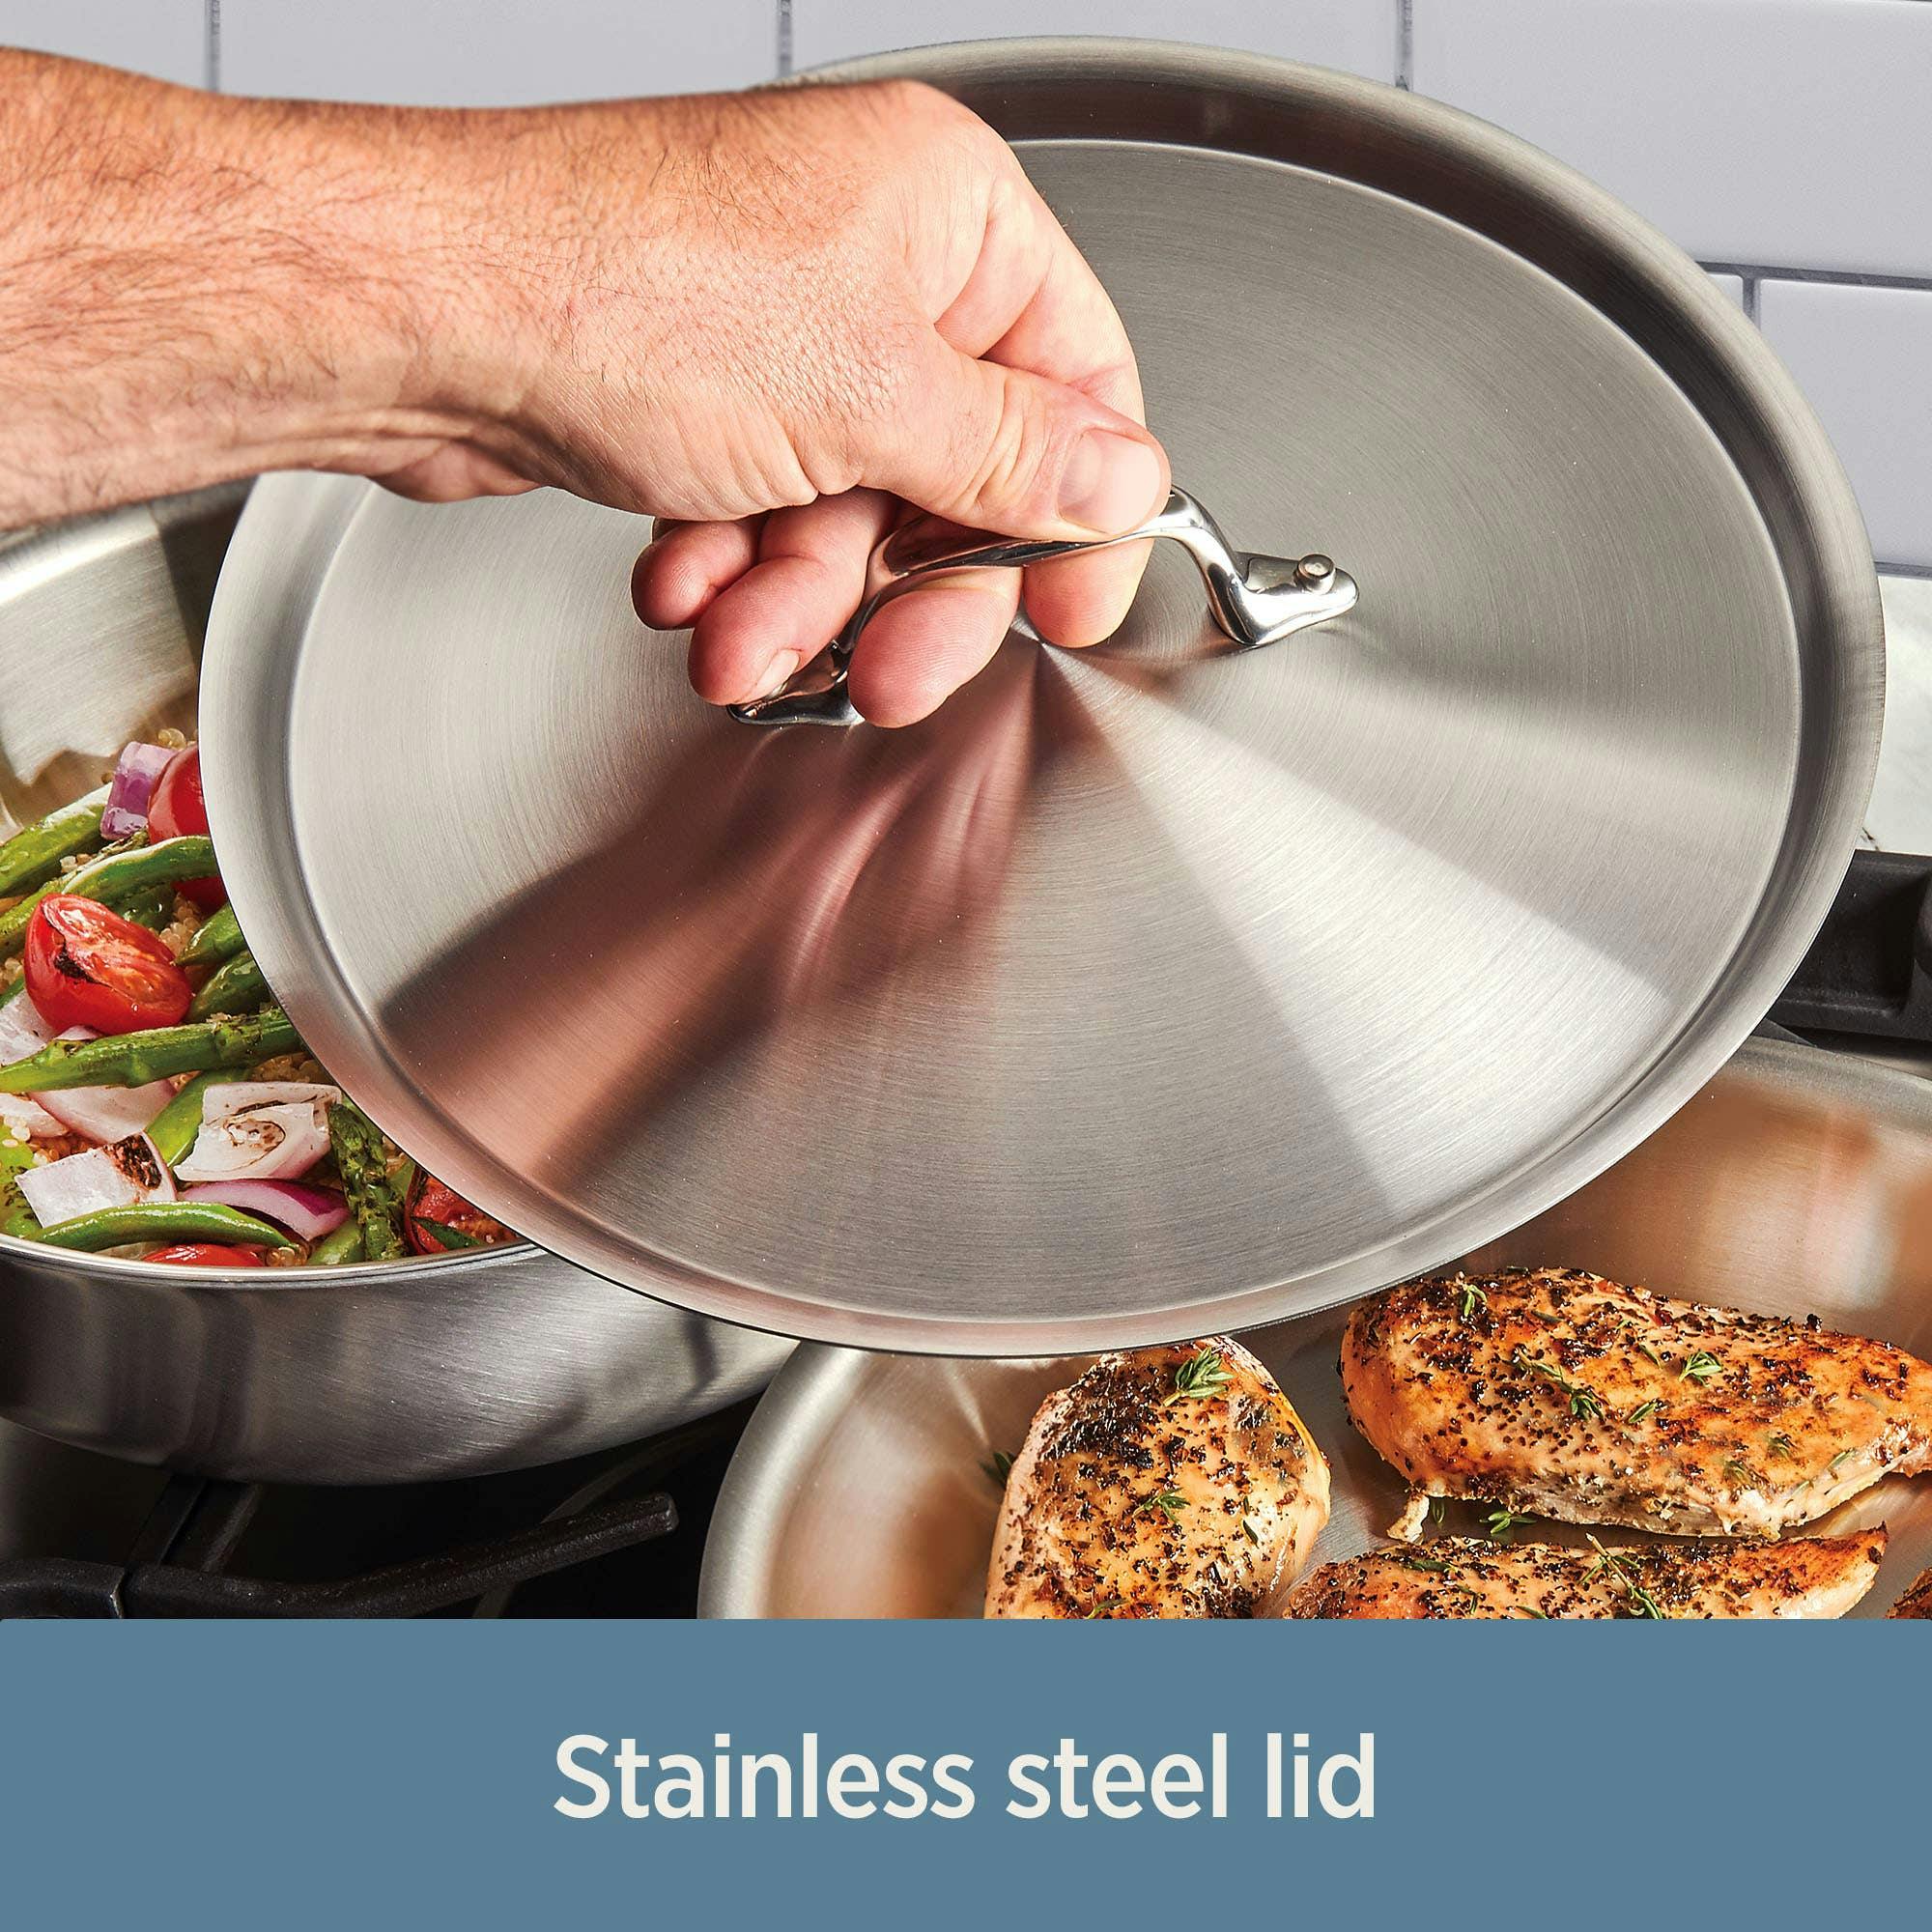 D3 Stainless Steel 12 Piece Cookware Set